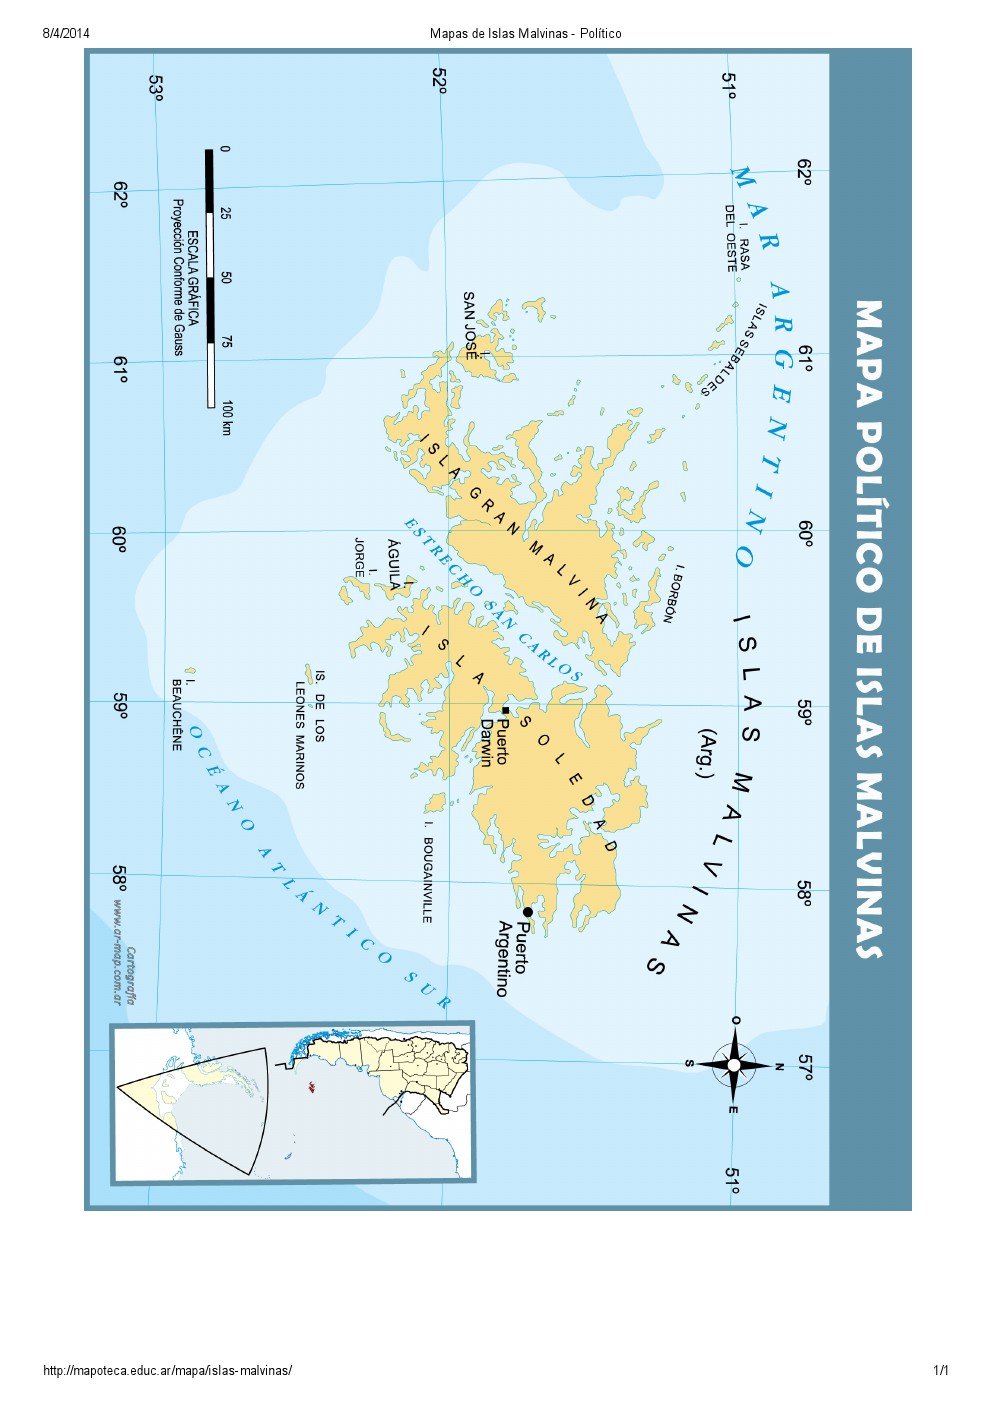 Mapa de islas de las Islas Malvinas. Mapoteca de Educ.ar